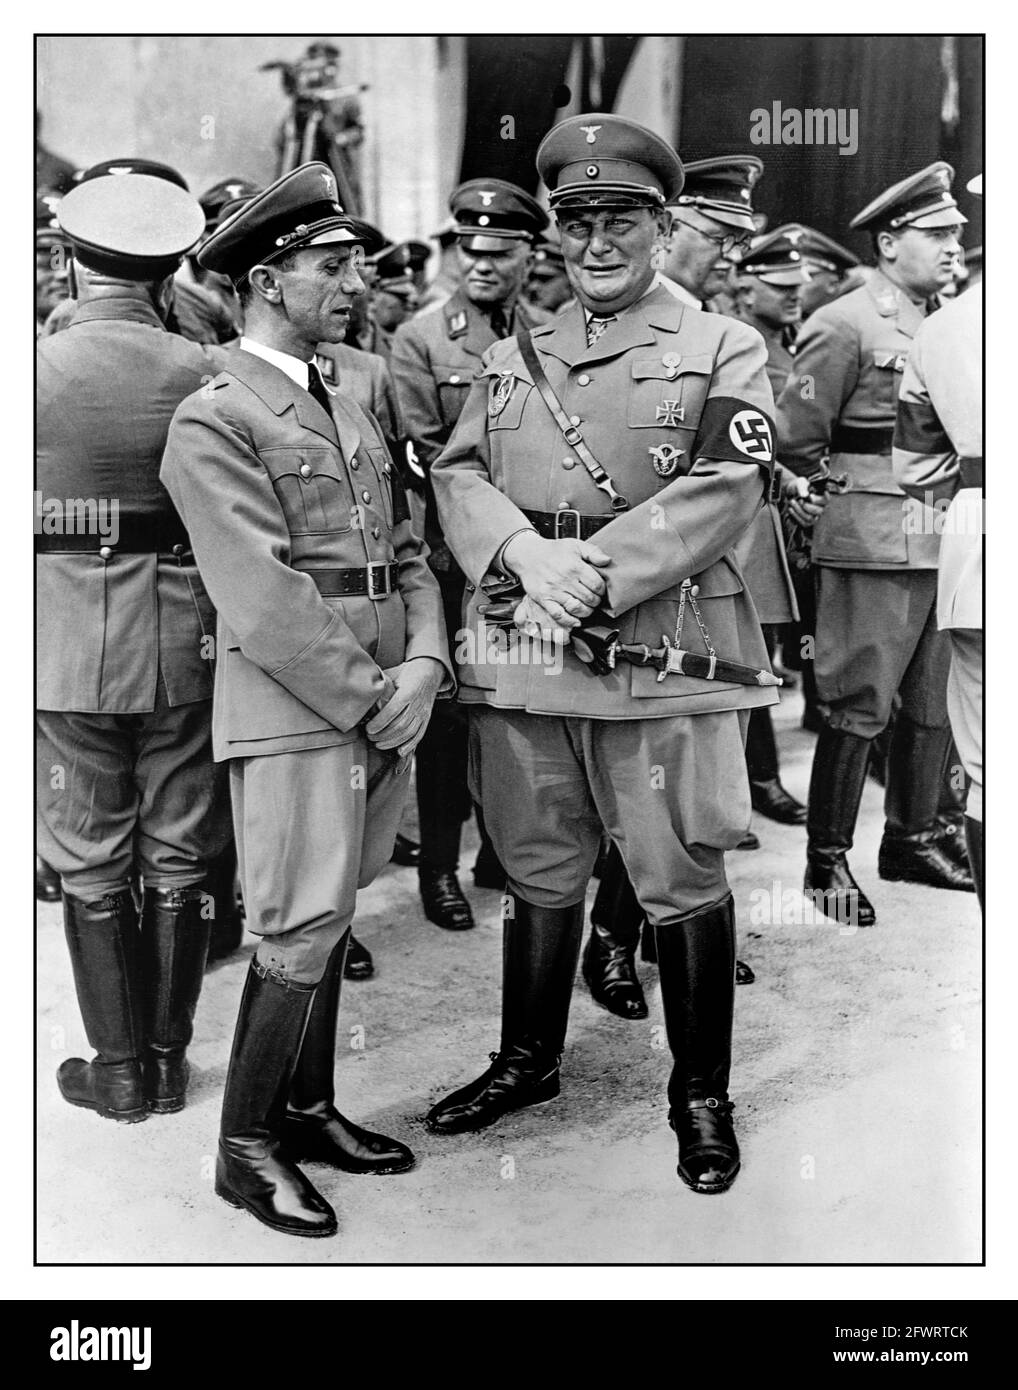 Propaganda Nazi-Foto von Dr. Joseph Goebbels und Hermann Goering in Uniform mit Jackstiefeln in Swastika-Armbändern, die mit anderen hochrangigen Offizieren der Nazi-Partei zusammenstanden. Deutschland, 1936. Stockfoto